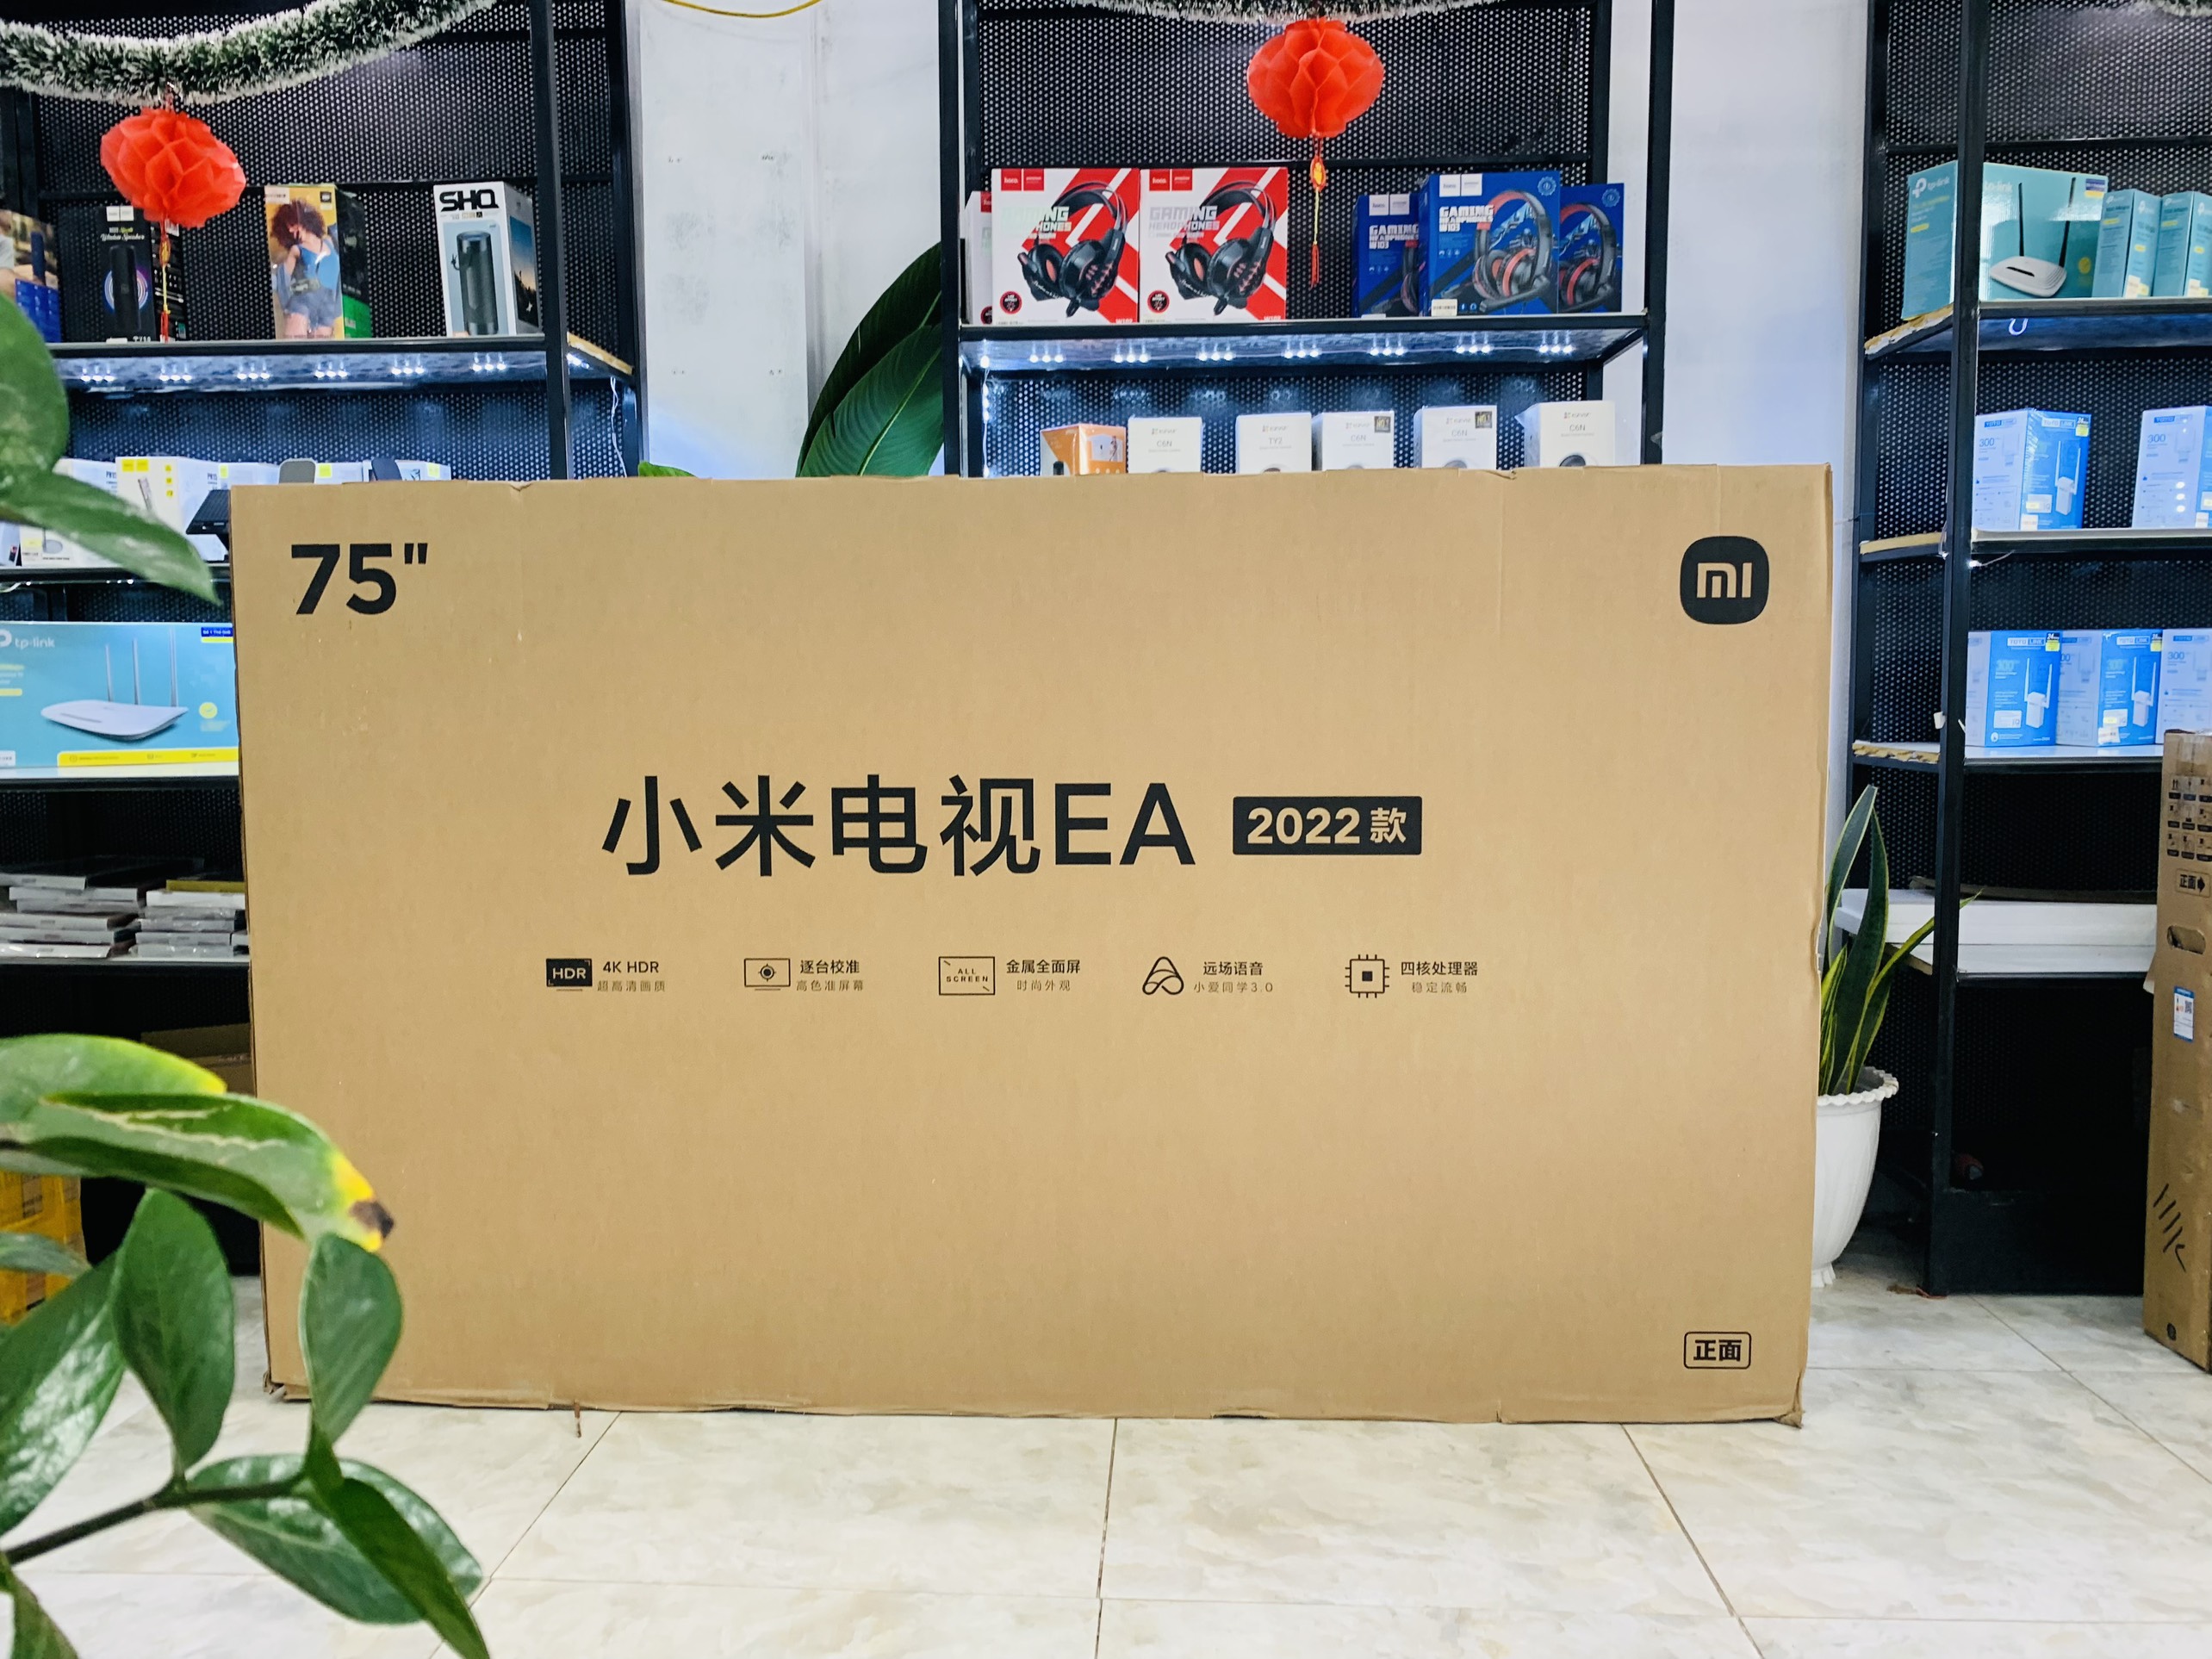 Tivi Xiaomi EA75 2022 Series - 75 inches - BẢO HÀNH ĐỔI MỚI 15 THÁNG